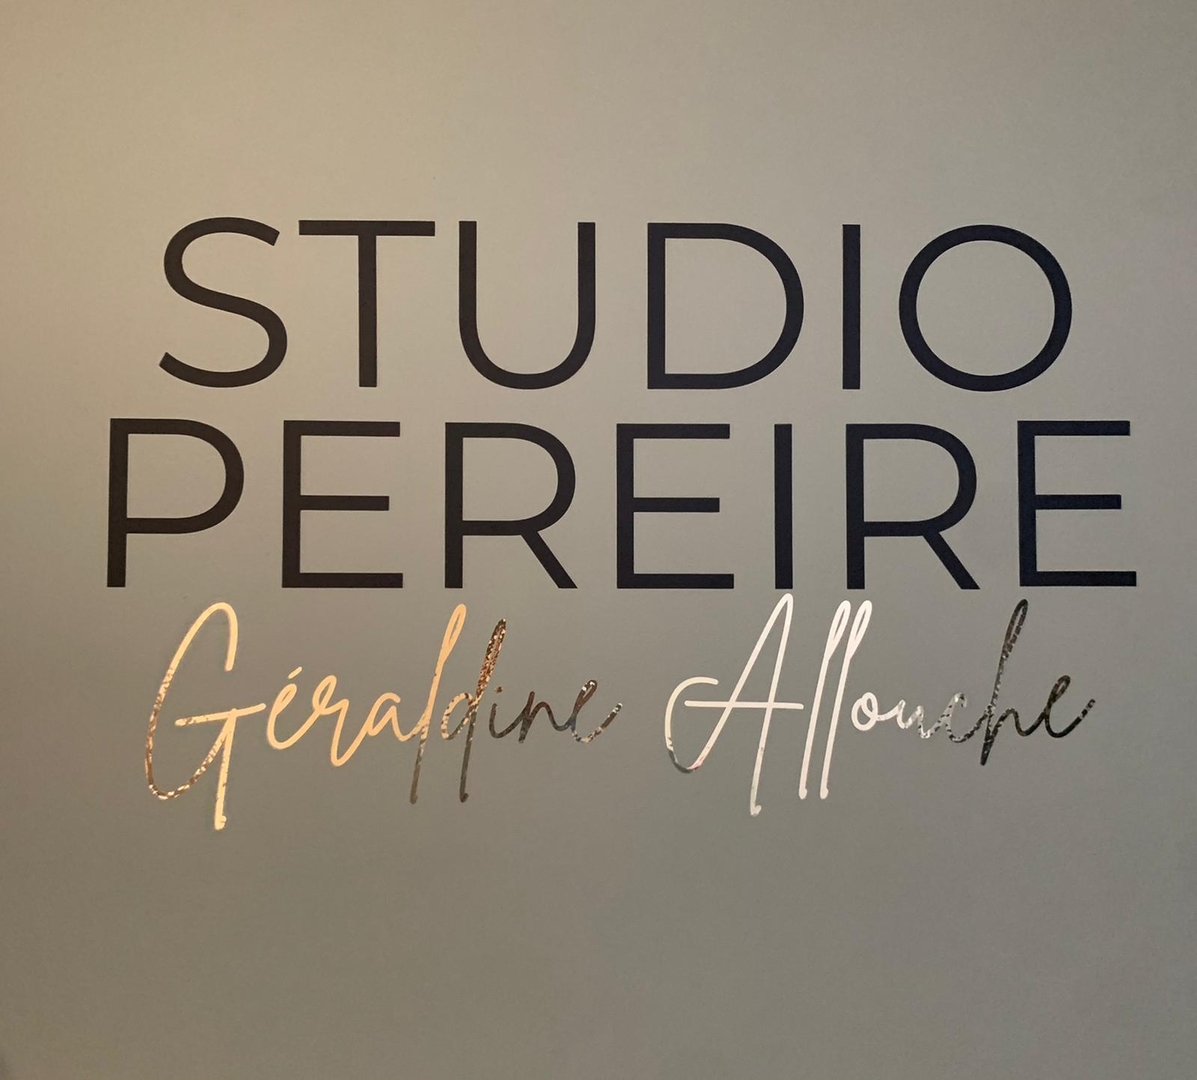 Géraldine Allouche, la coach vocal vedette ouvre enfin son école! Découvrez  le Studio Pereire en plein coeur de Paris. 